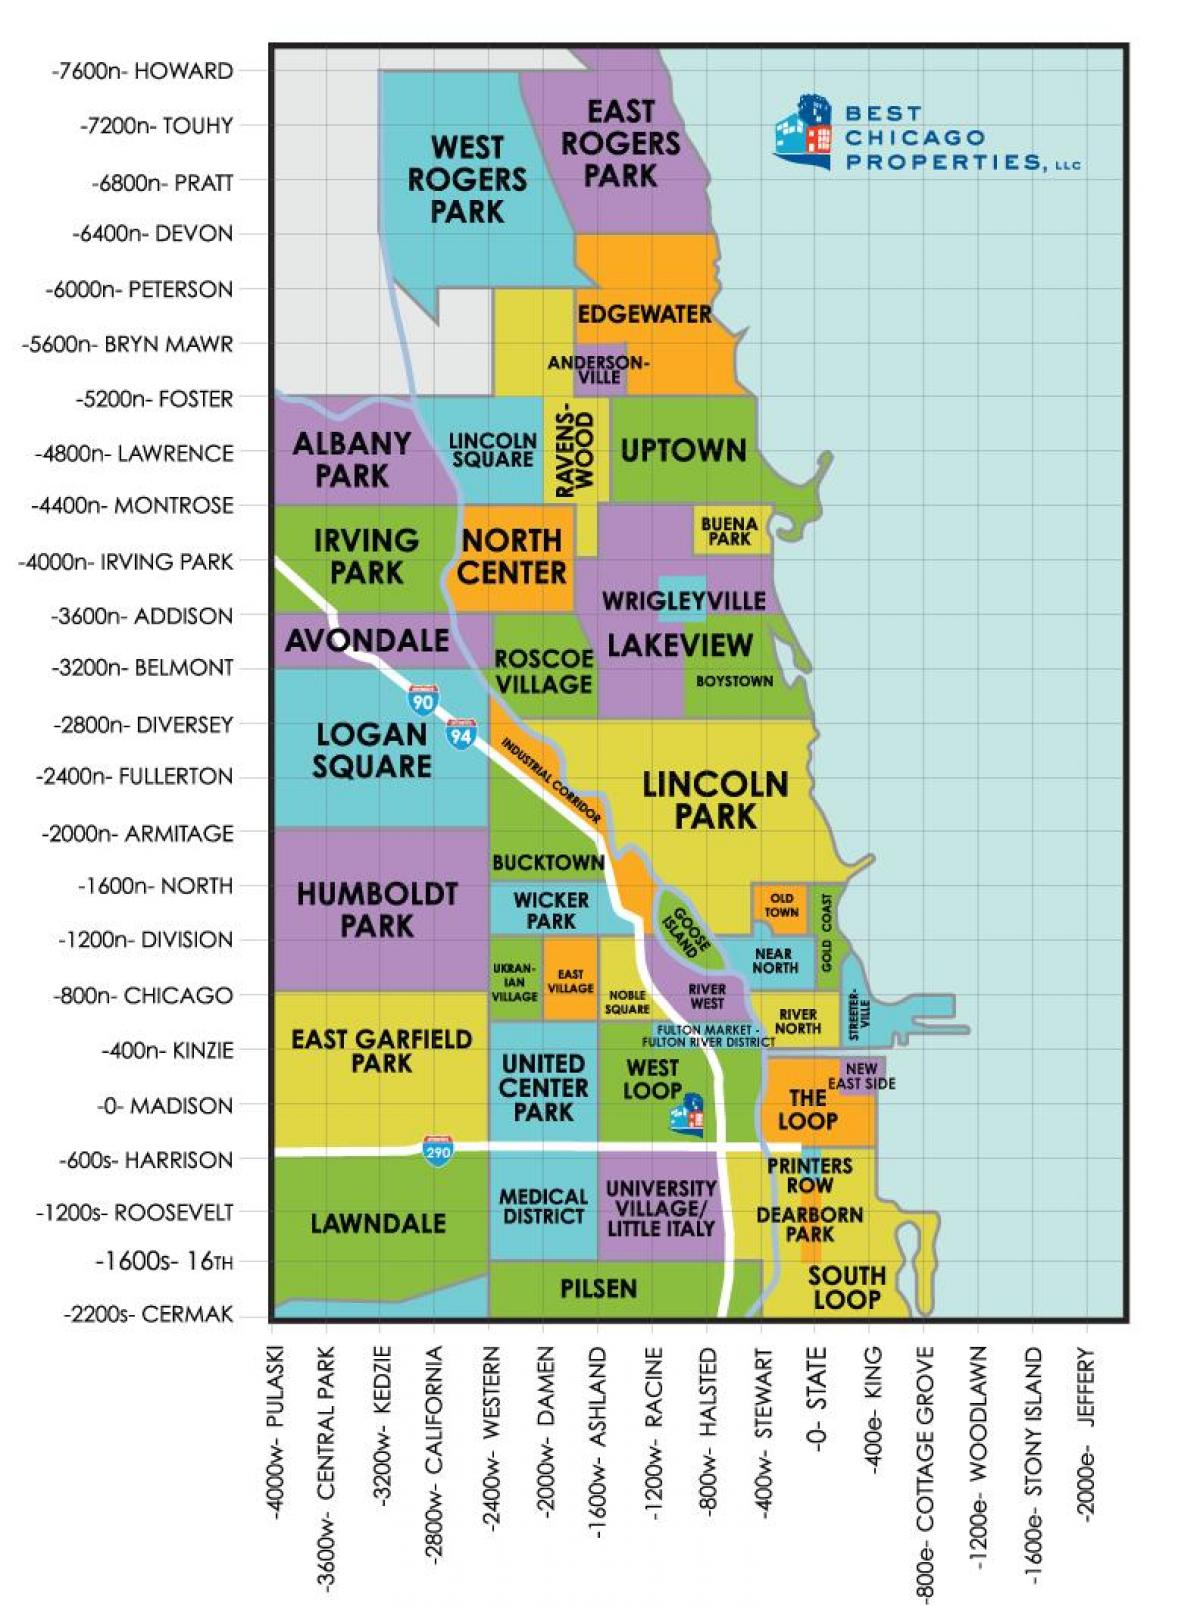 पड़ोस में शिकागो के नक्शे